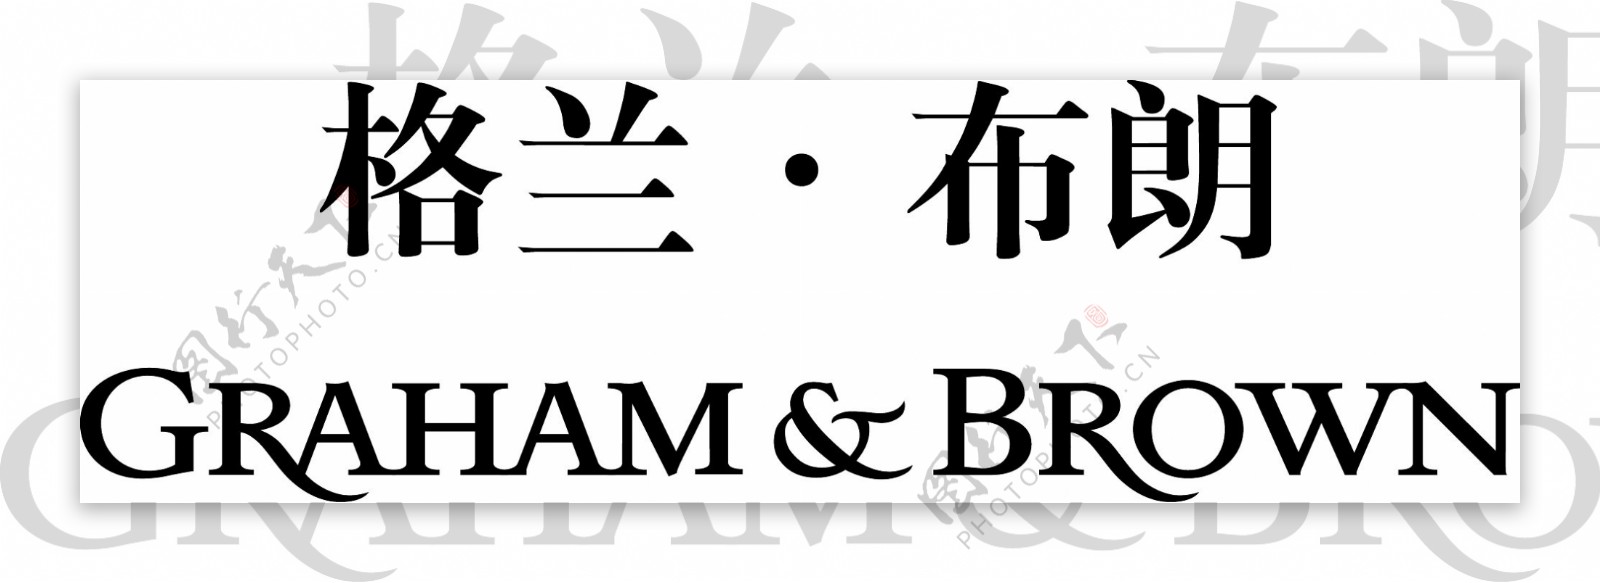 格兰布朗logo图片